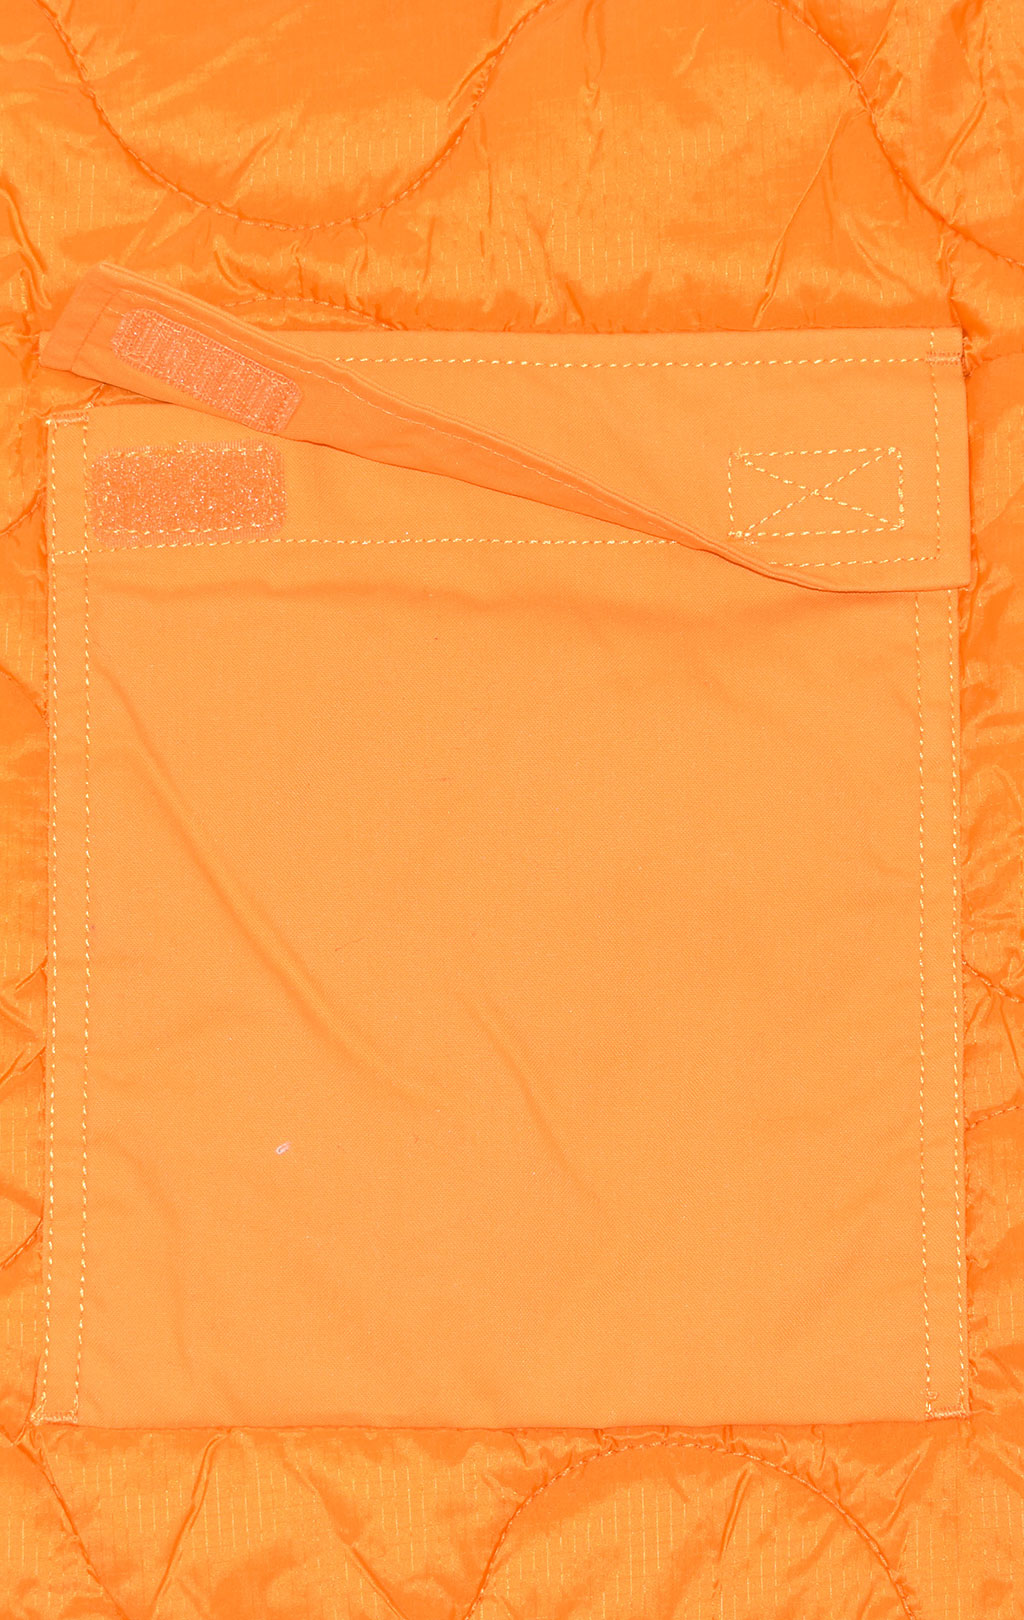 Куртка-жилет ALPHA INDUSTRIES ALS UTILITY VEST FW 21 m emergency orange 